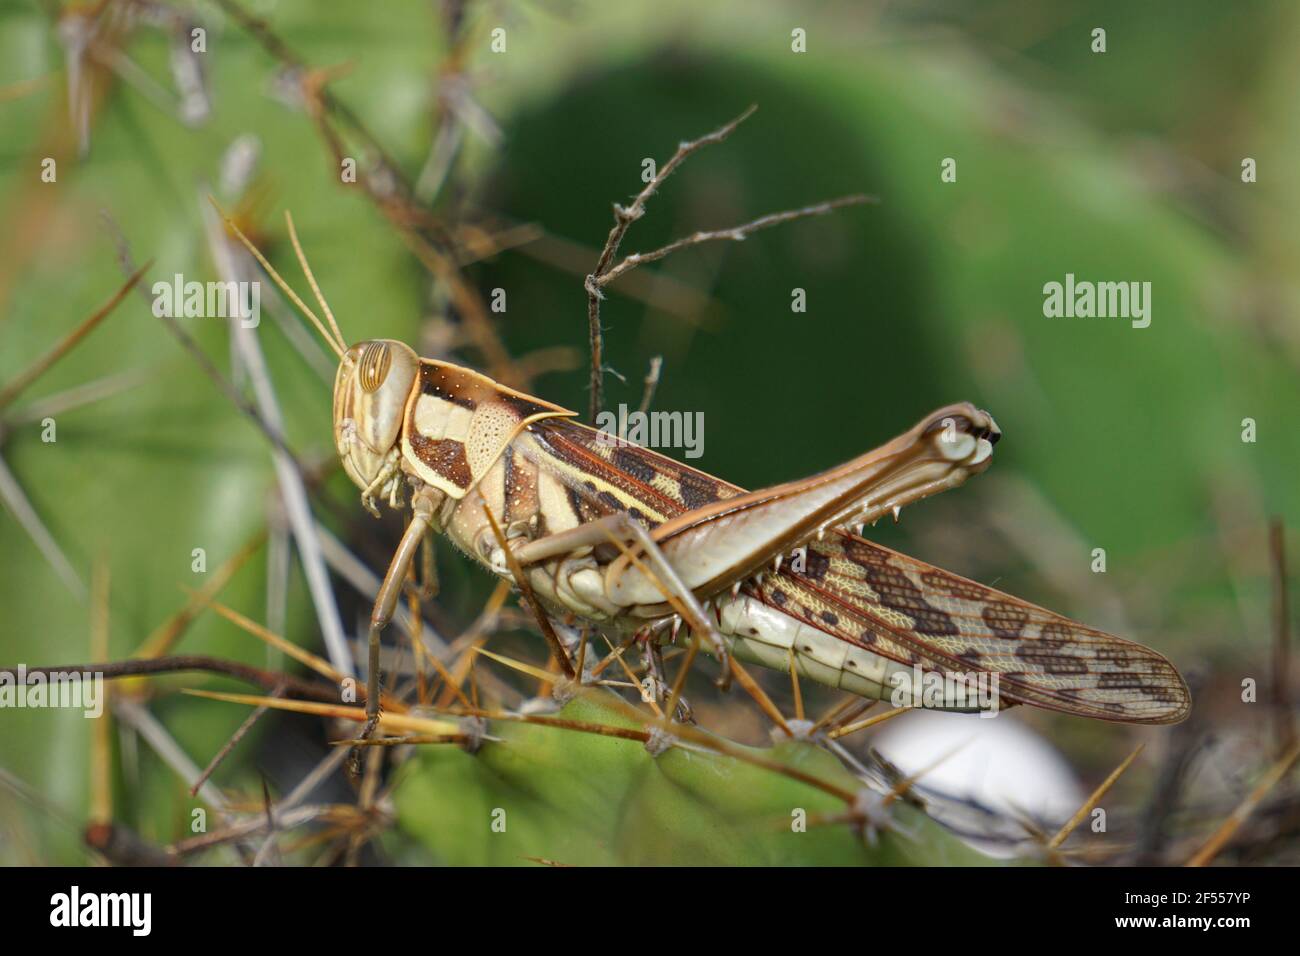 An adult winged migratory locust (Locusta migratoria